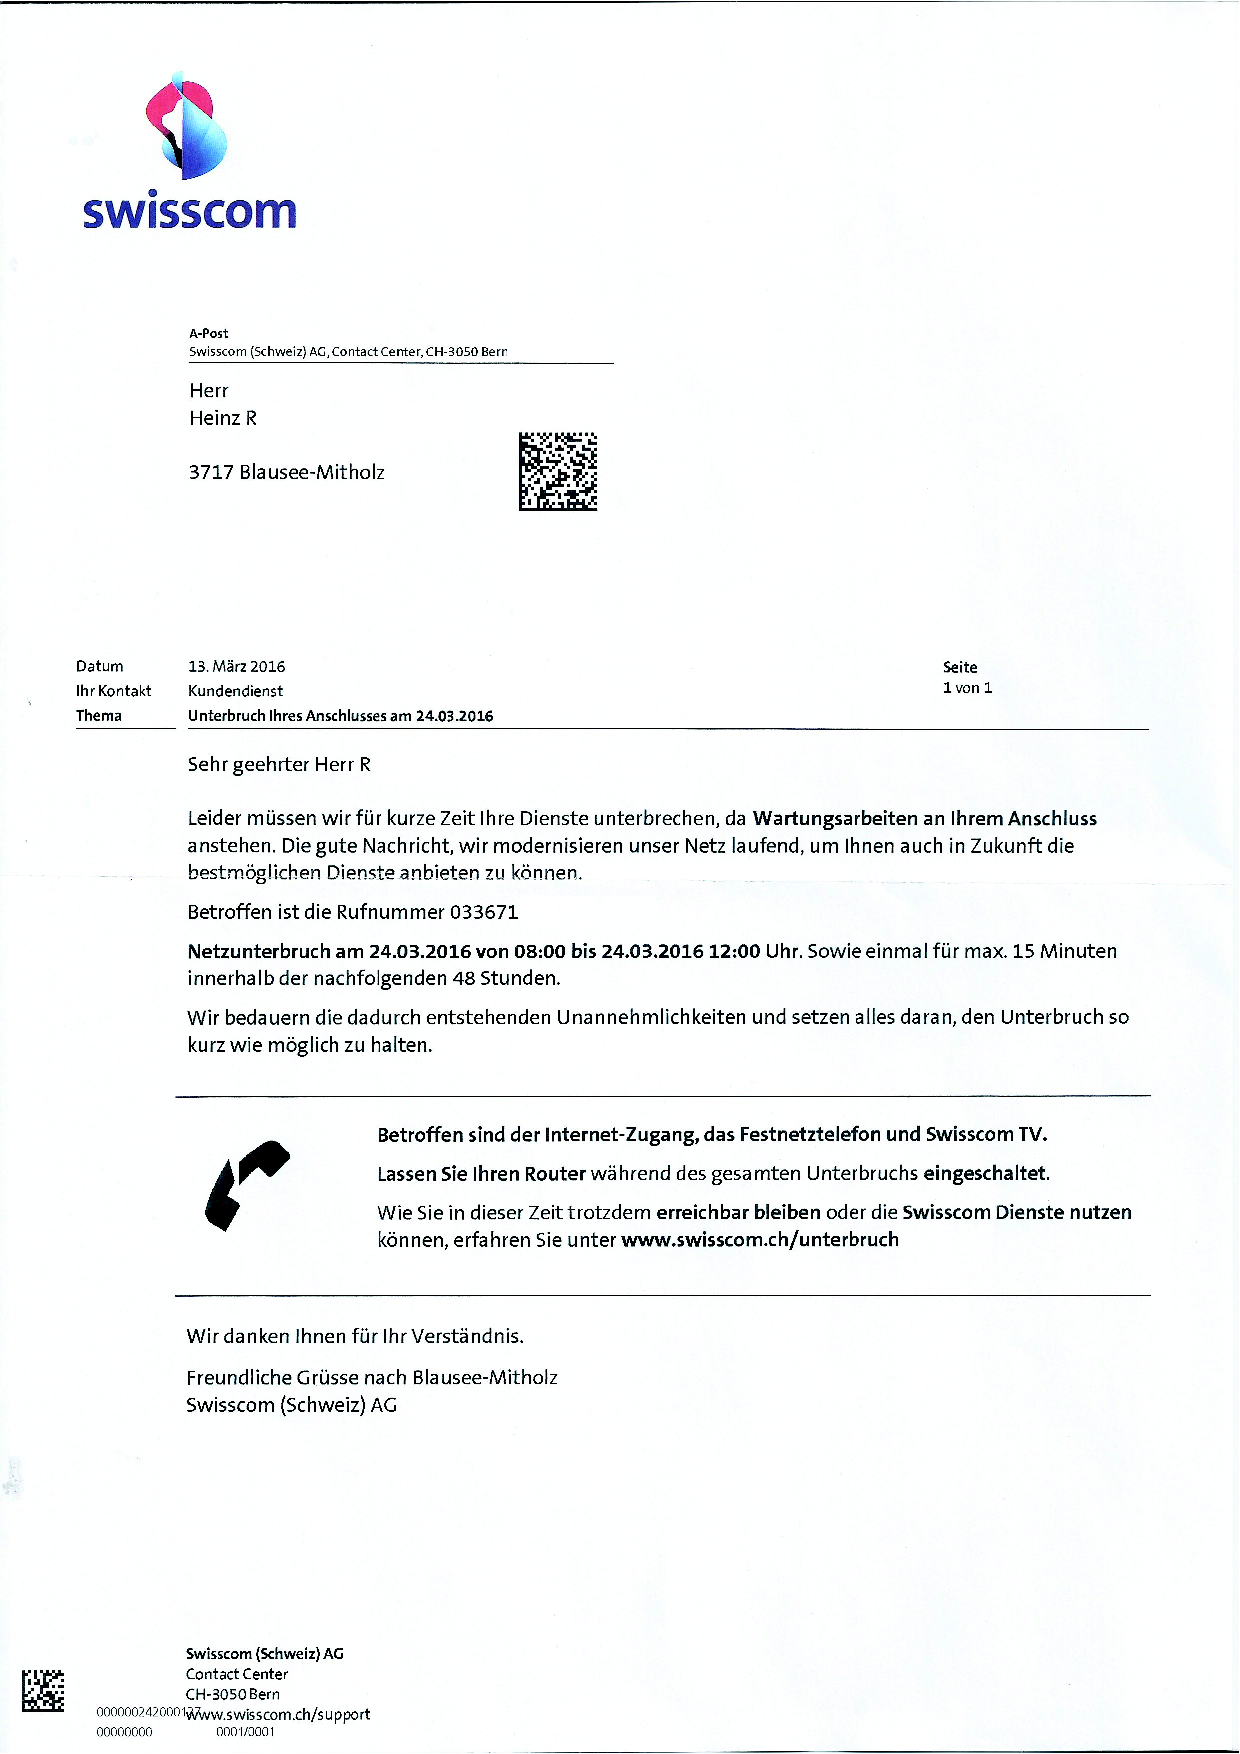 Anschlussunterbruch Ankündigung von der Swisscom für den Anschluss in Mitholz